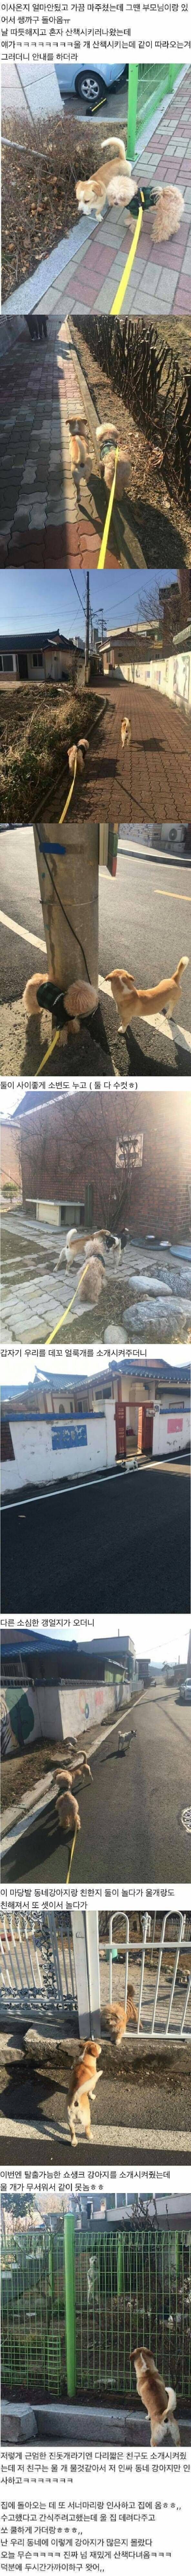 썸네일-이사 온 주민 동네 소개시켜주는 인싸 강아지-이미지